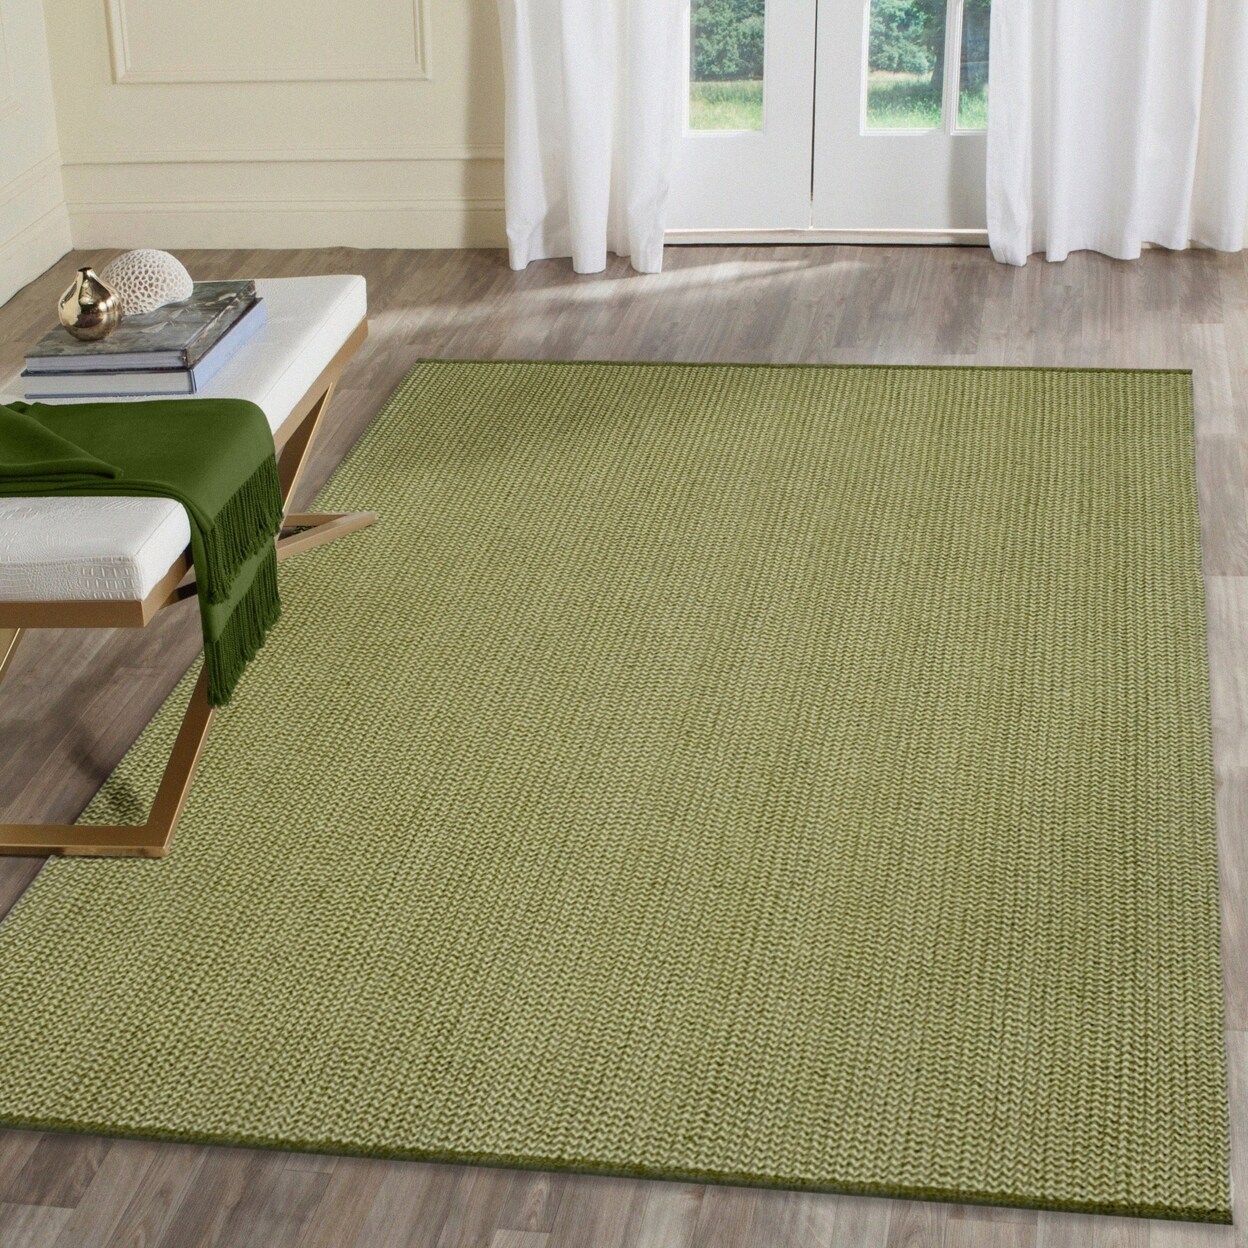 Stylez Carpet - Indoor & Outdoor Living